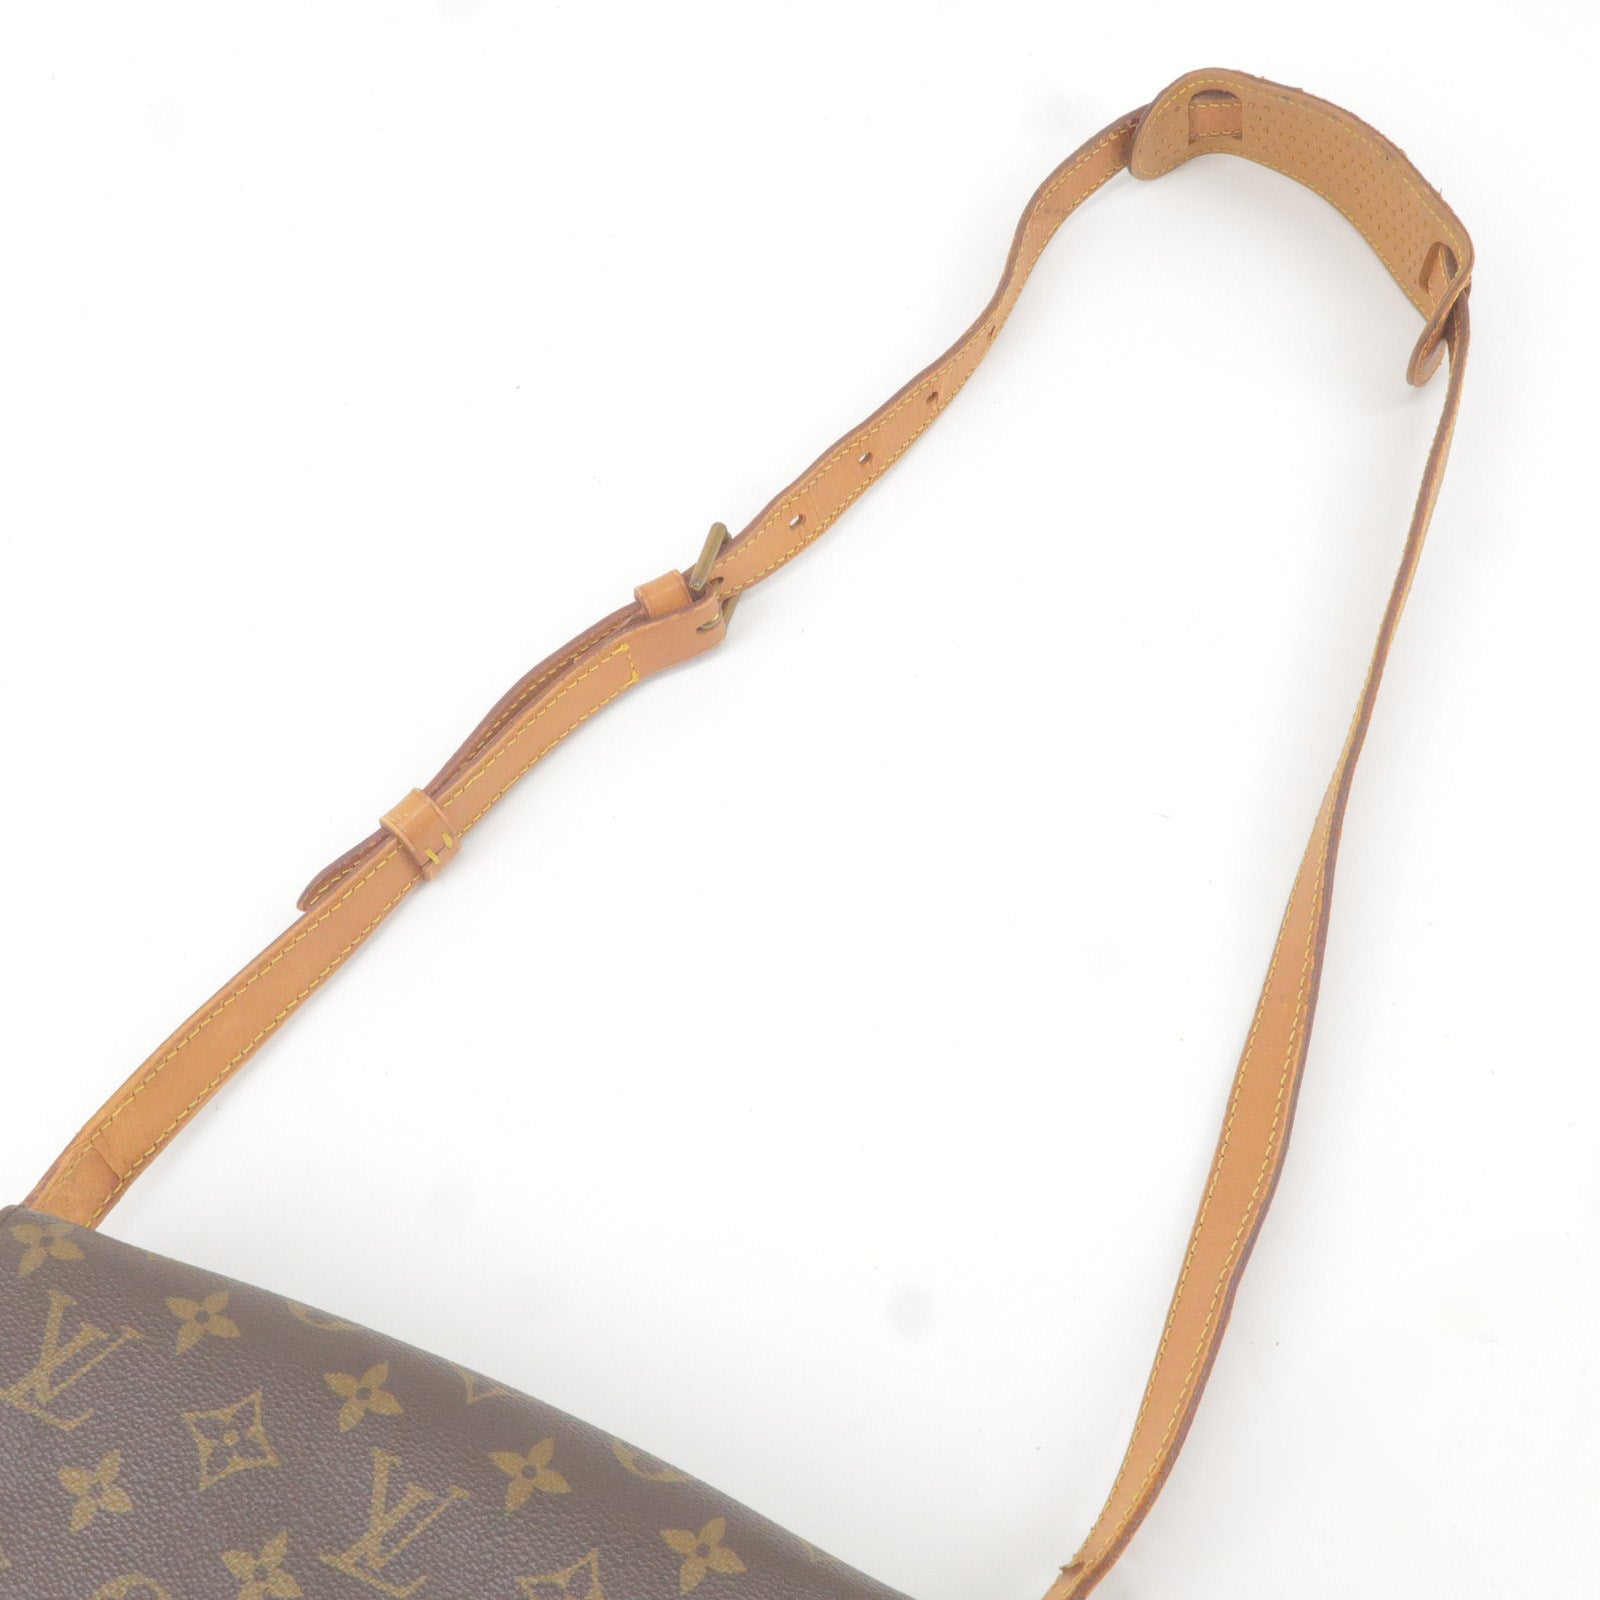 Louis Vuitton Saint Louis Brown Canvas Clutch Bag (Pre-Owned)